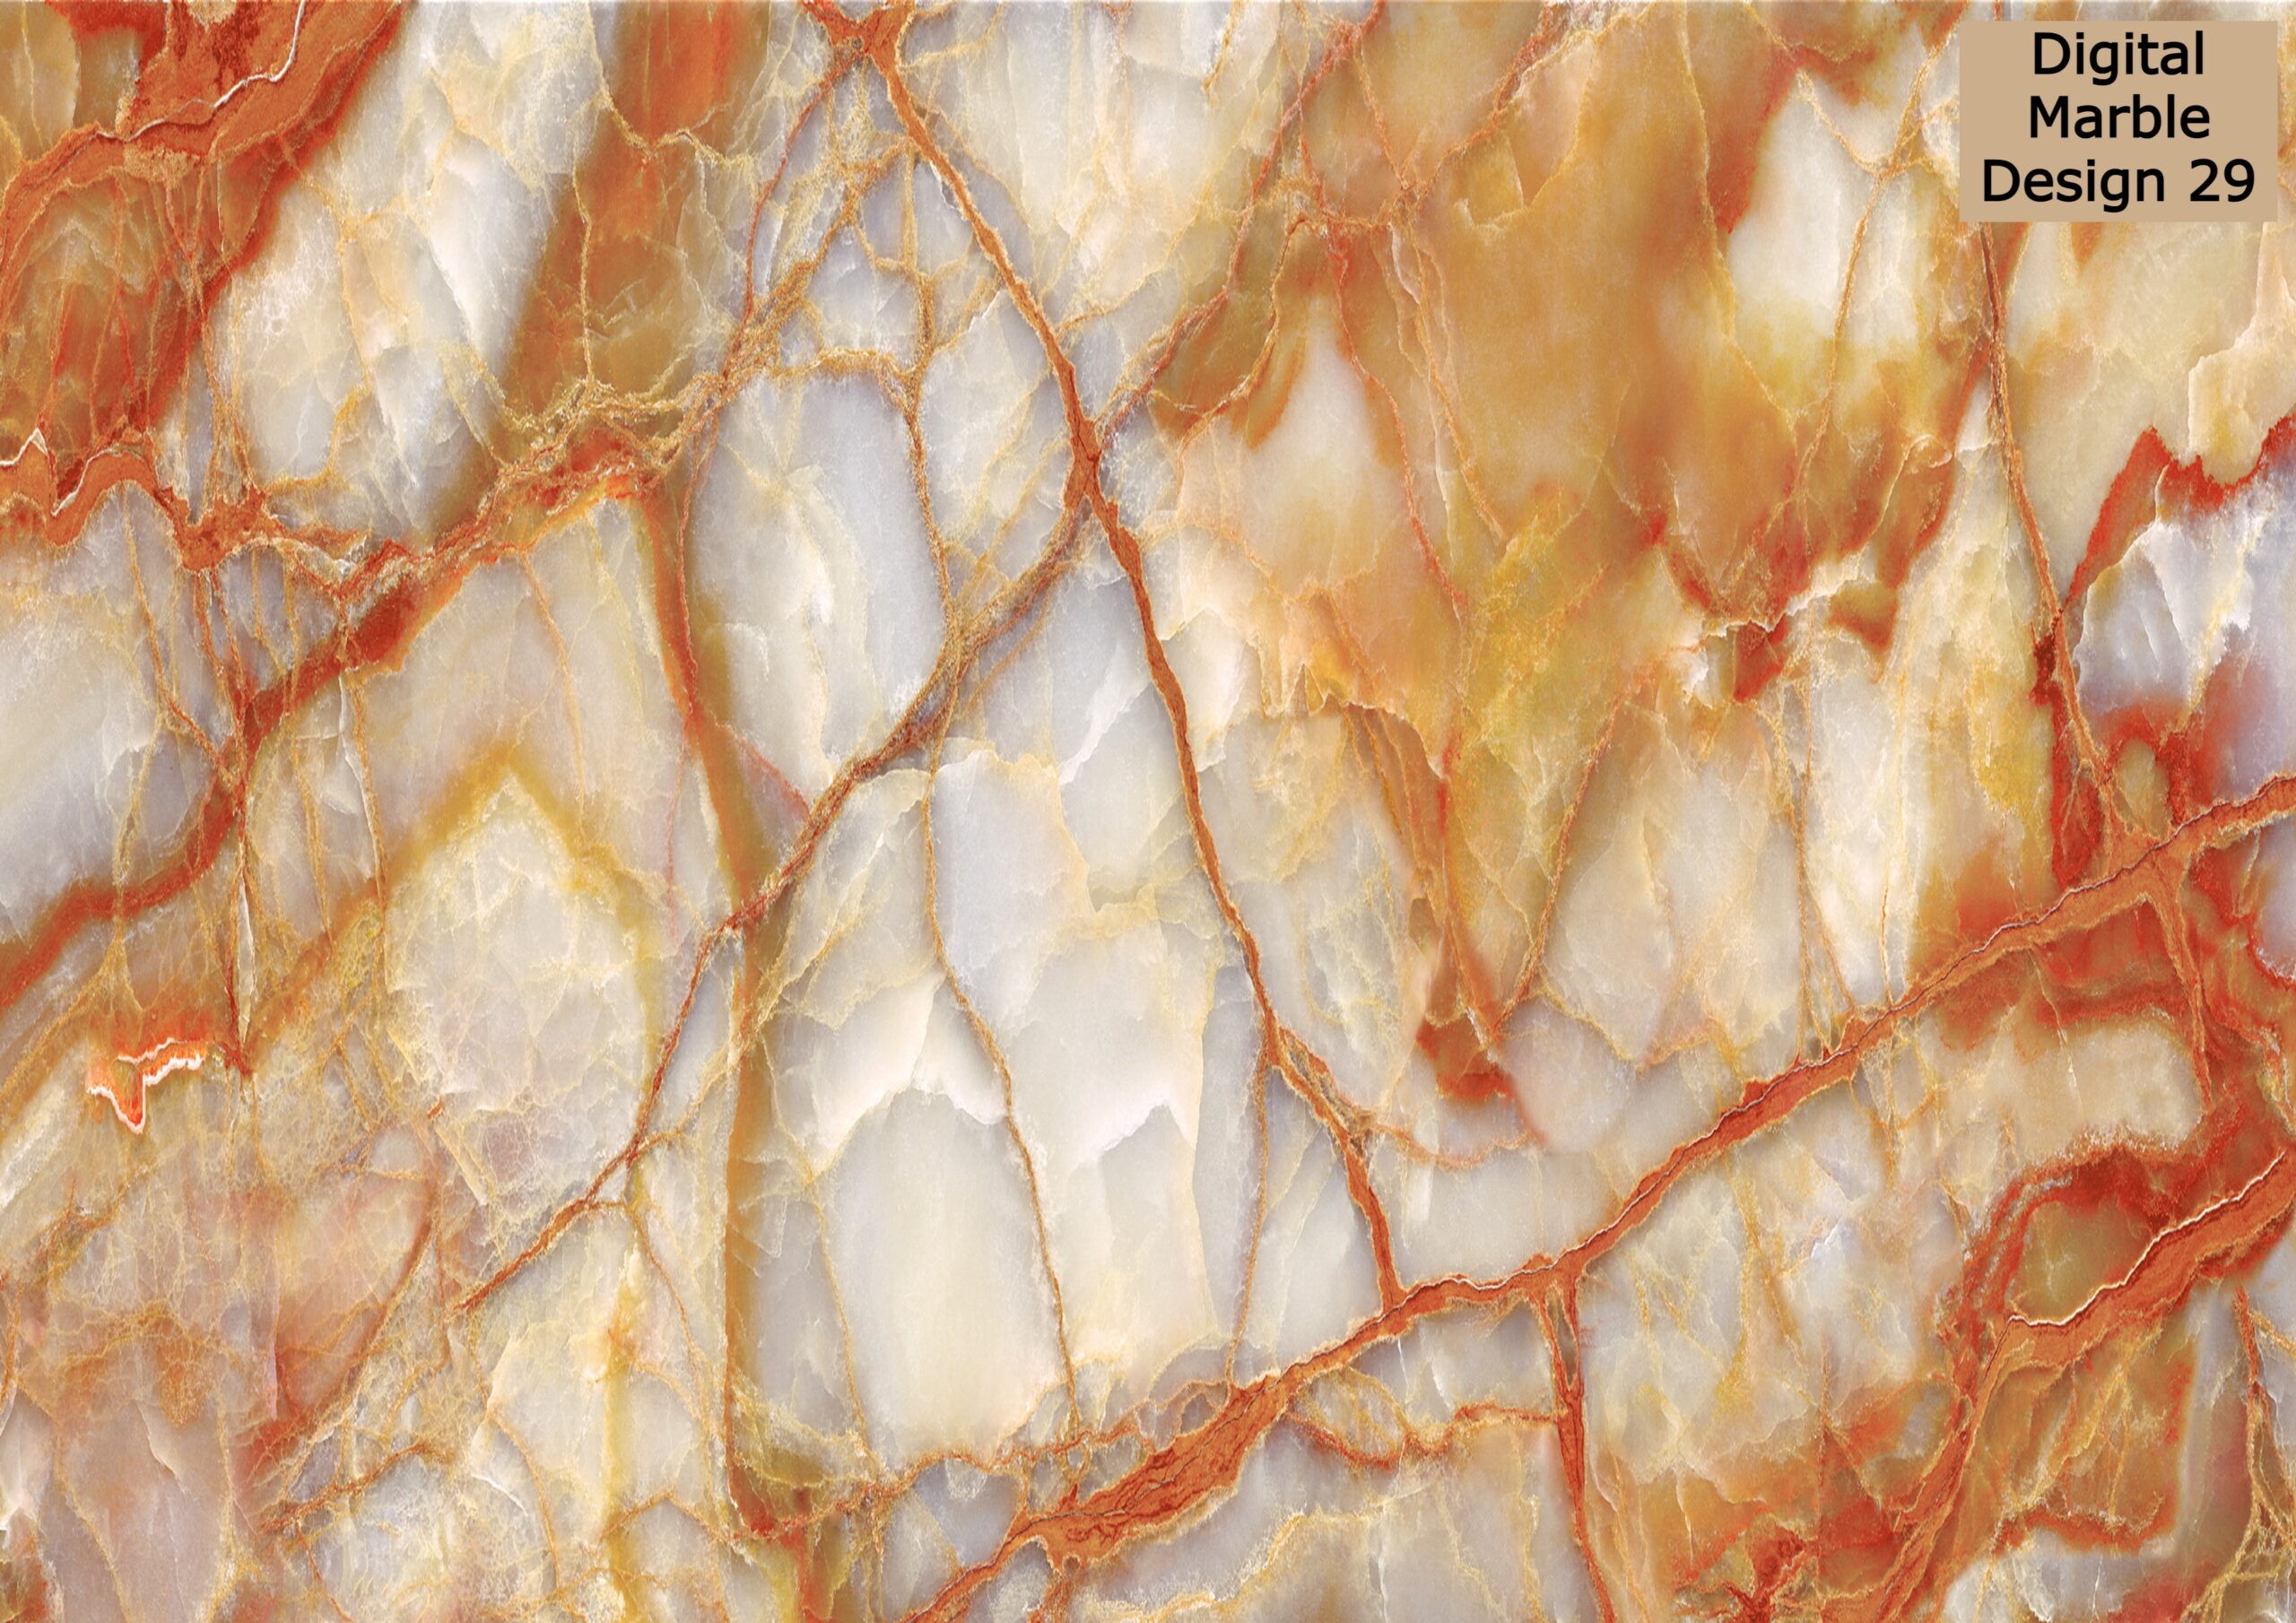 Digital marble designs 29